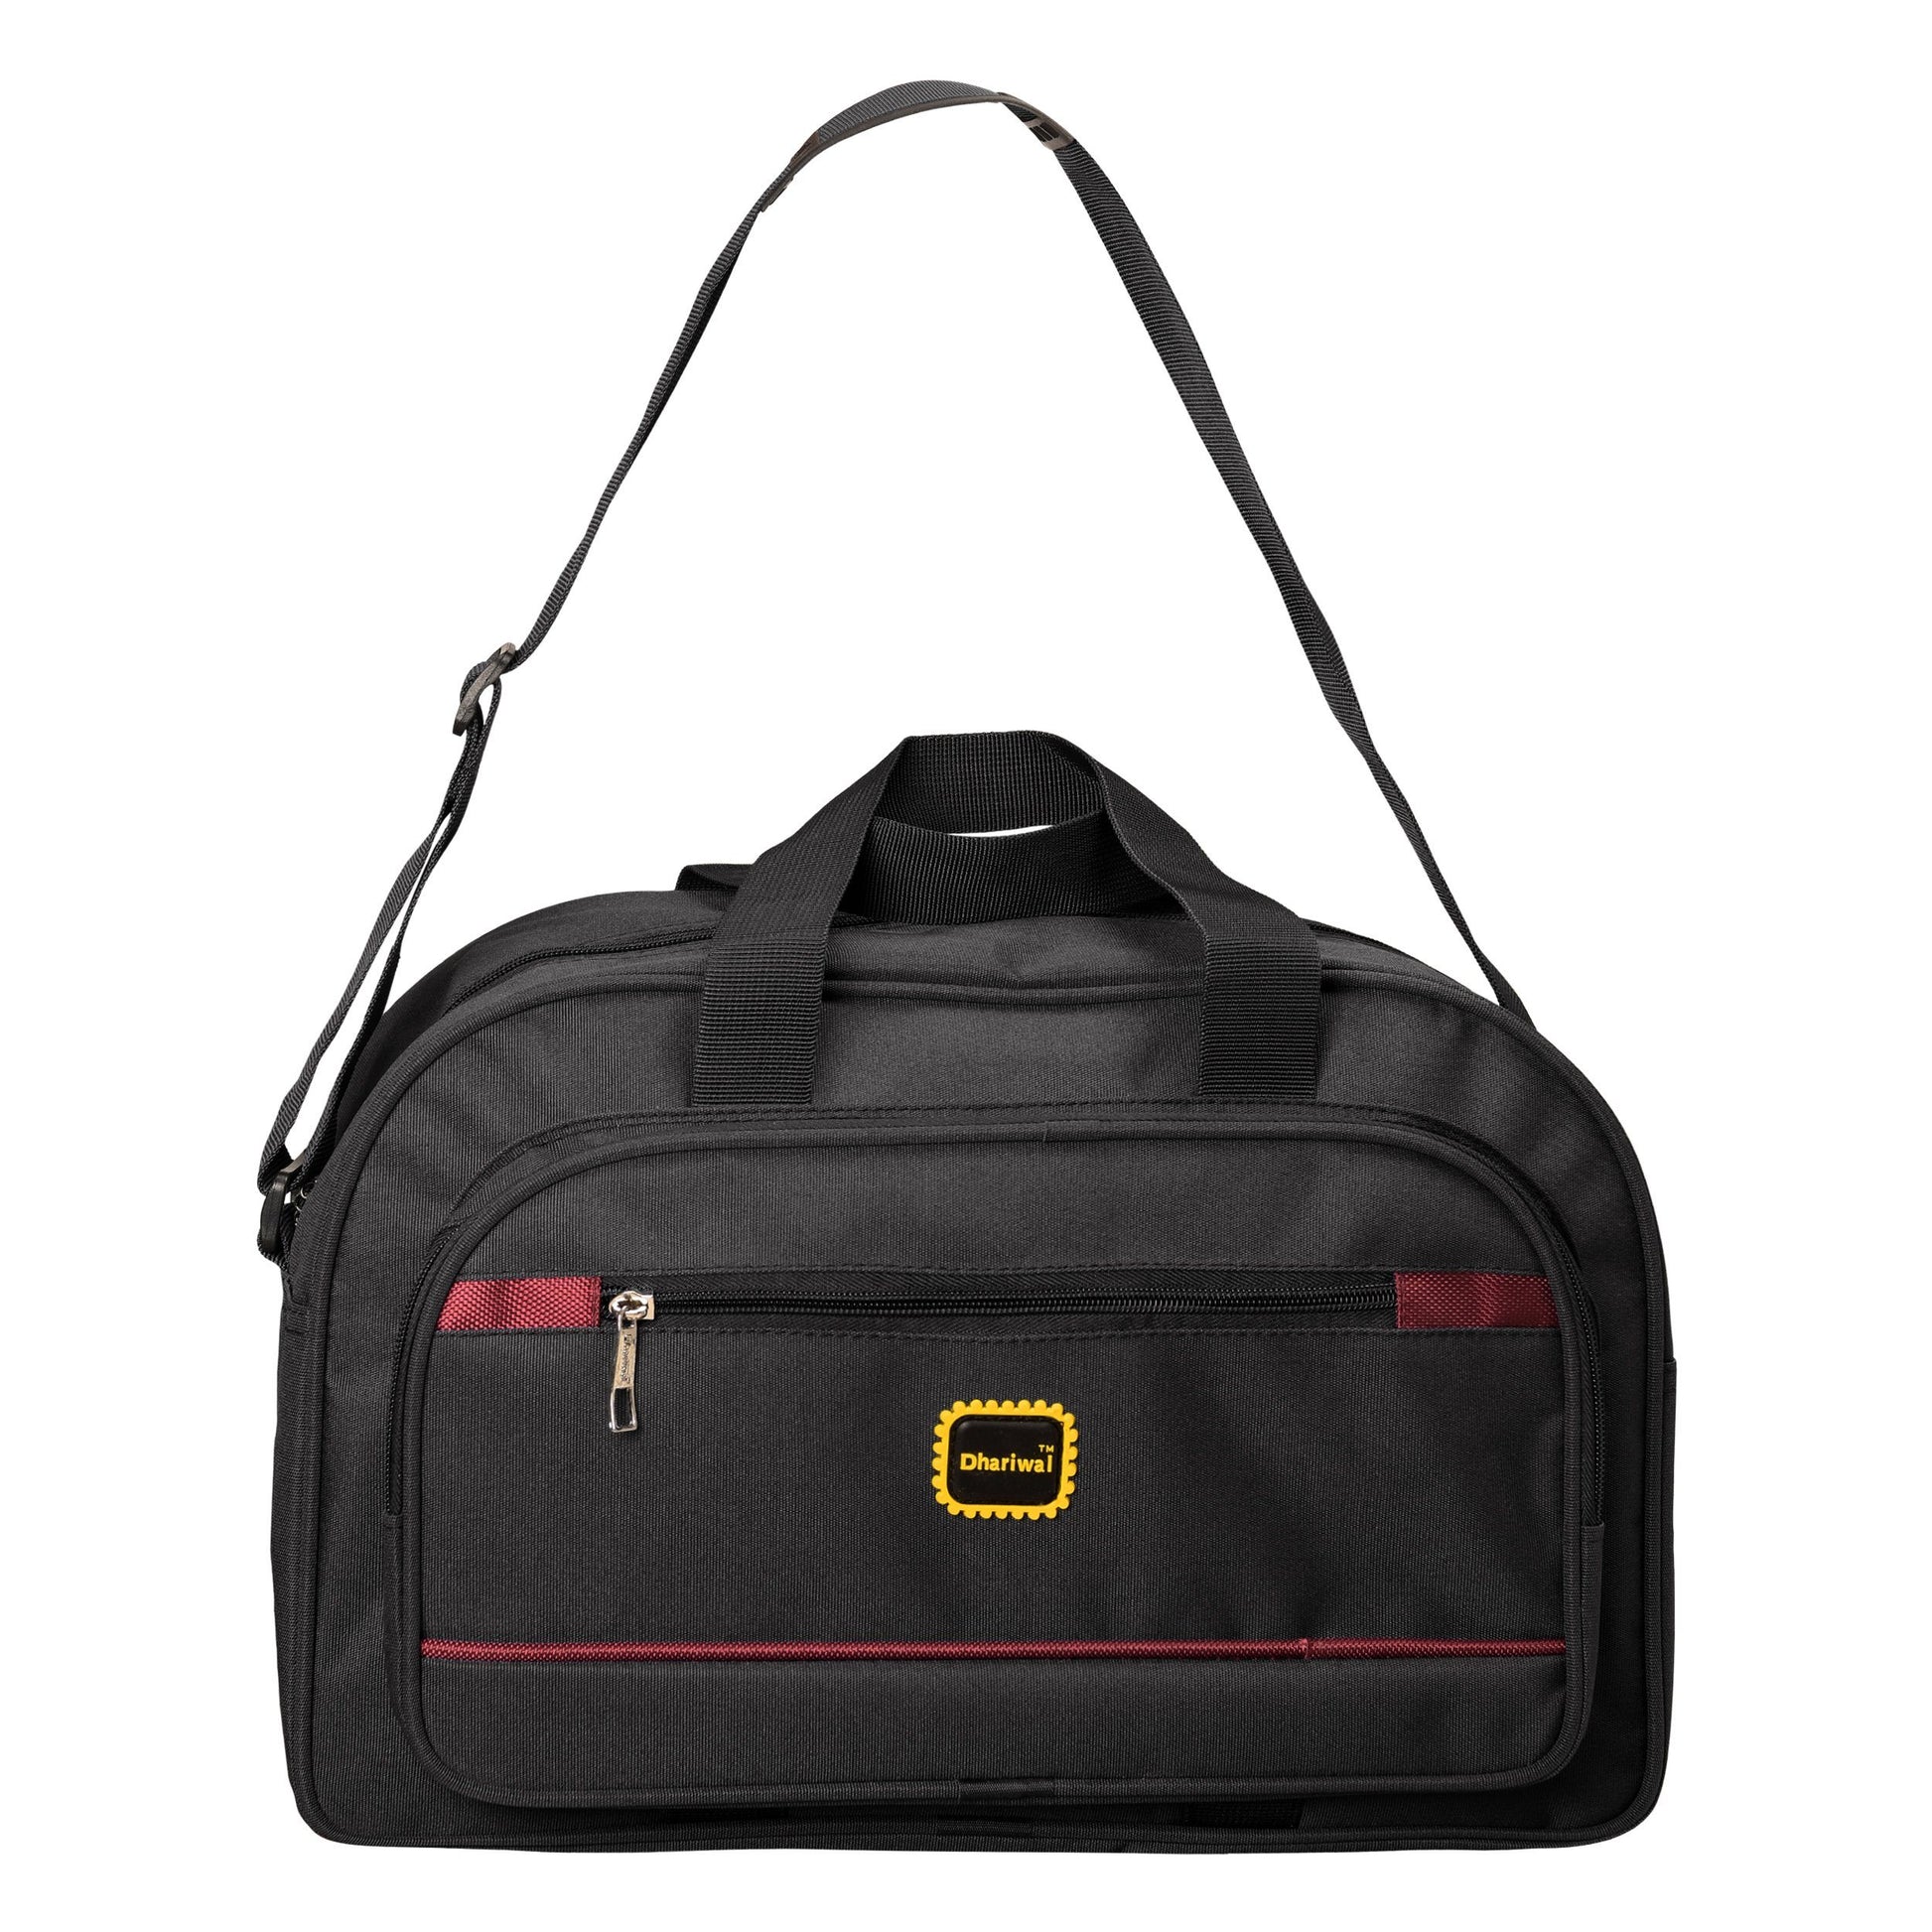 Dhariwal 16" Traveling Bag Capacity 32L - TRB-515 Travelling Bags Dhariwal Black 